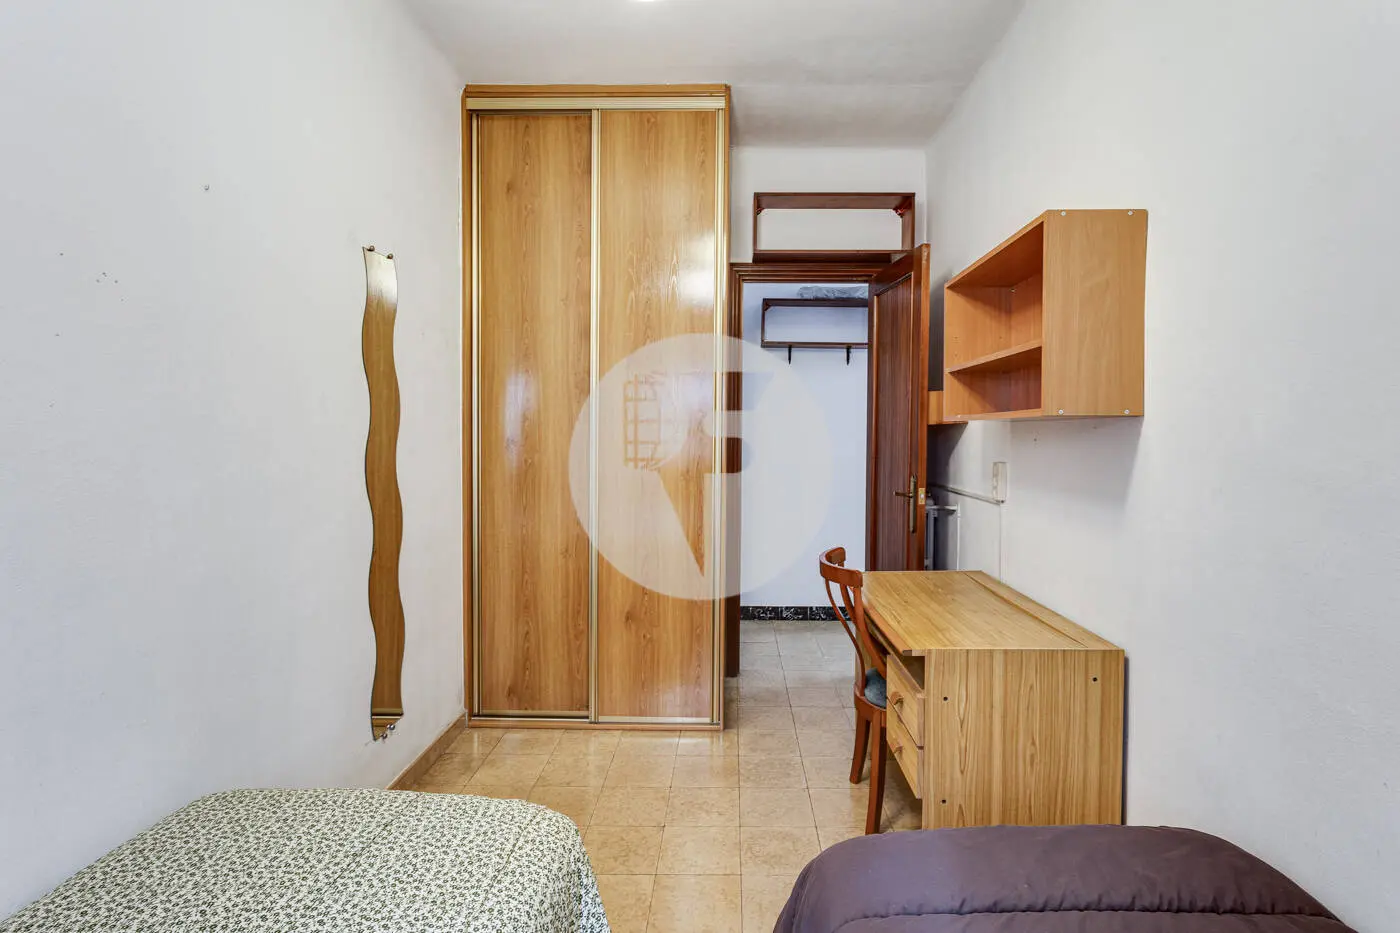 Pis de 3 habitacions ubicat al barri de la Nova Esquerra de l'Eixample de Barcelona. 24